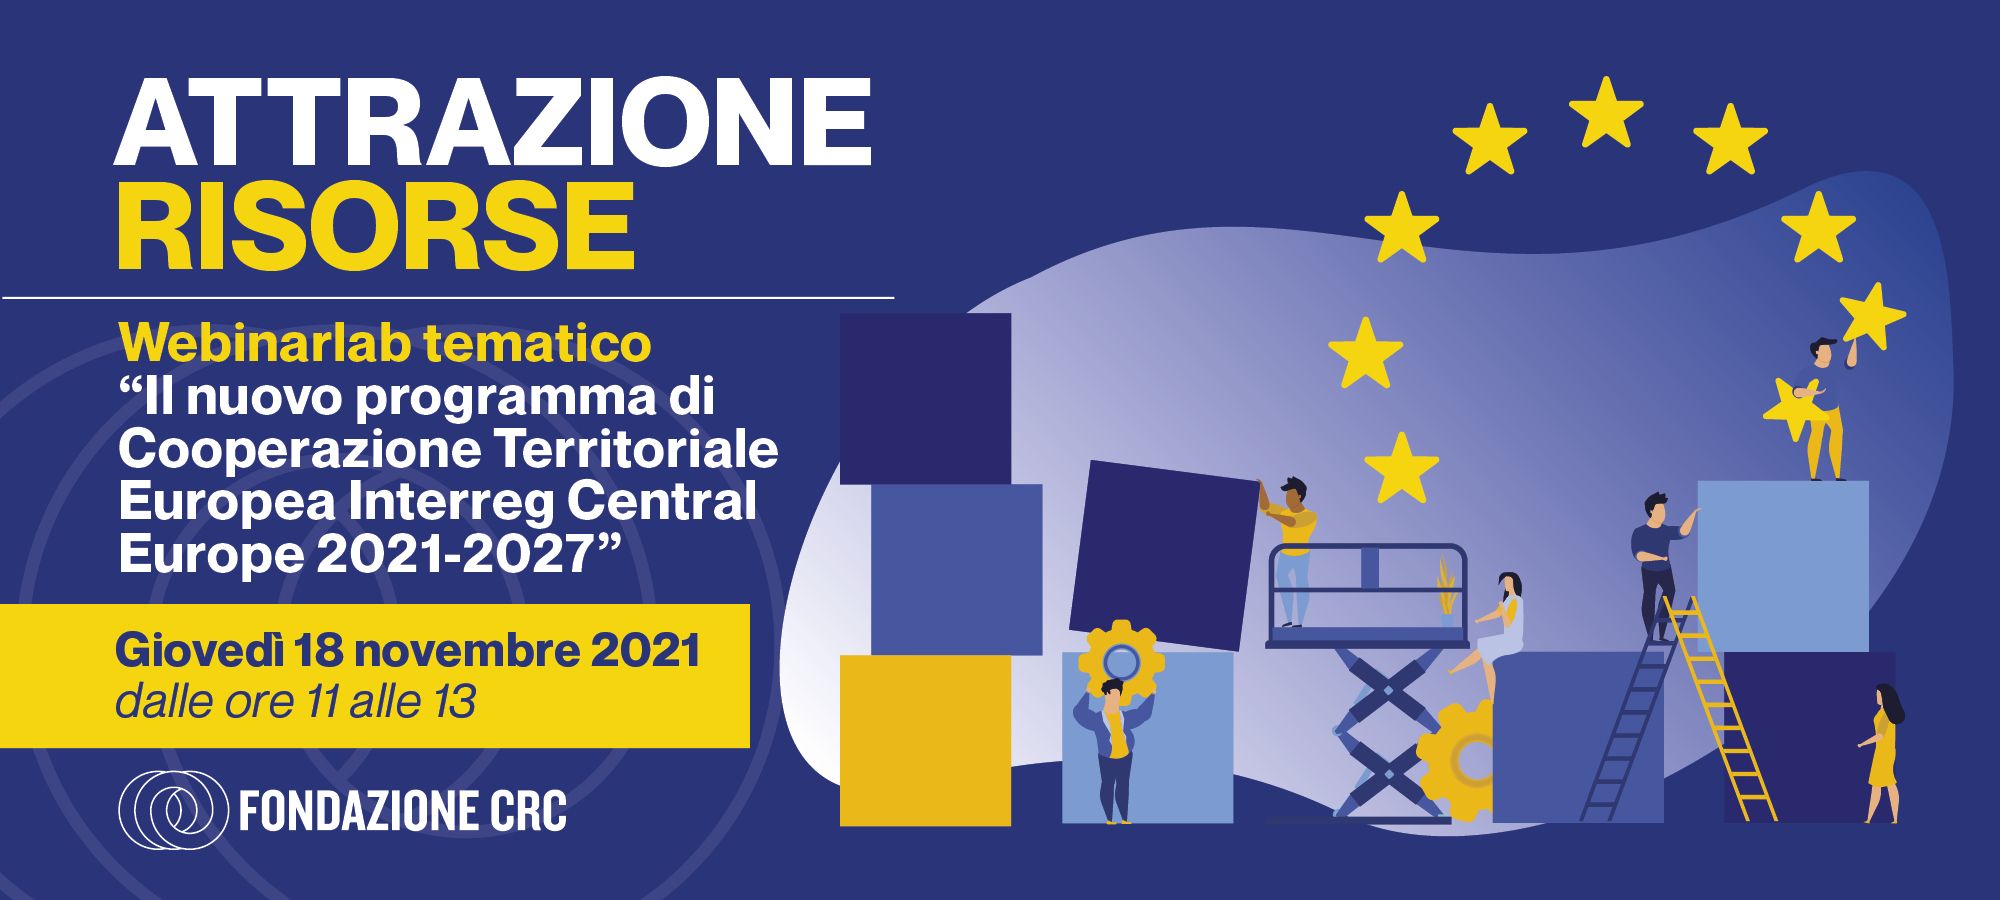 Il nuovo programma di Cooperazione Territoriale Europea Interreg Central Europe 2021-2027